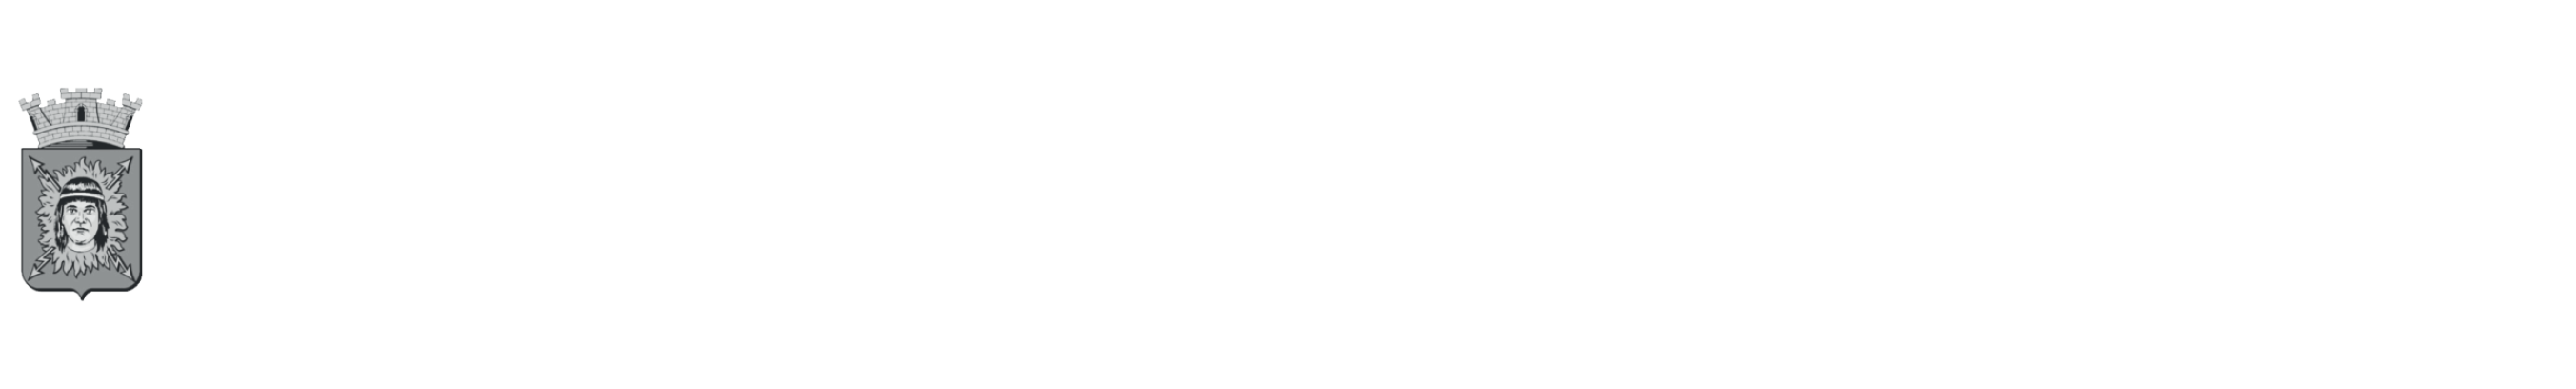 regua de logos museu india vanuire e governo do estado de são paulo